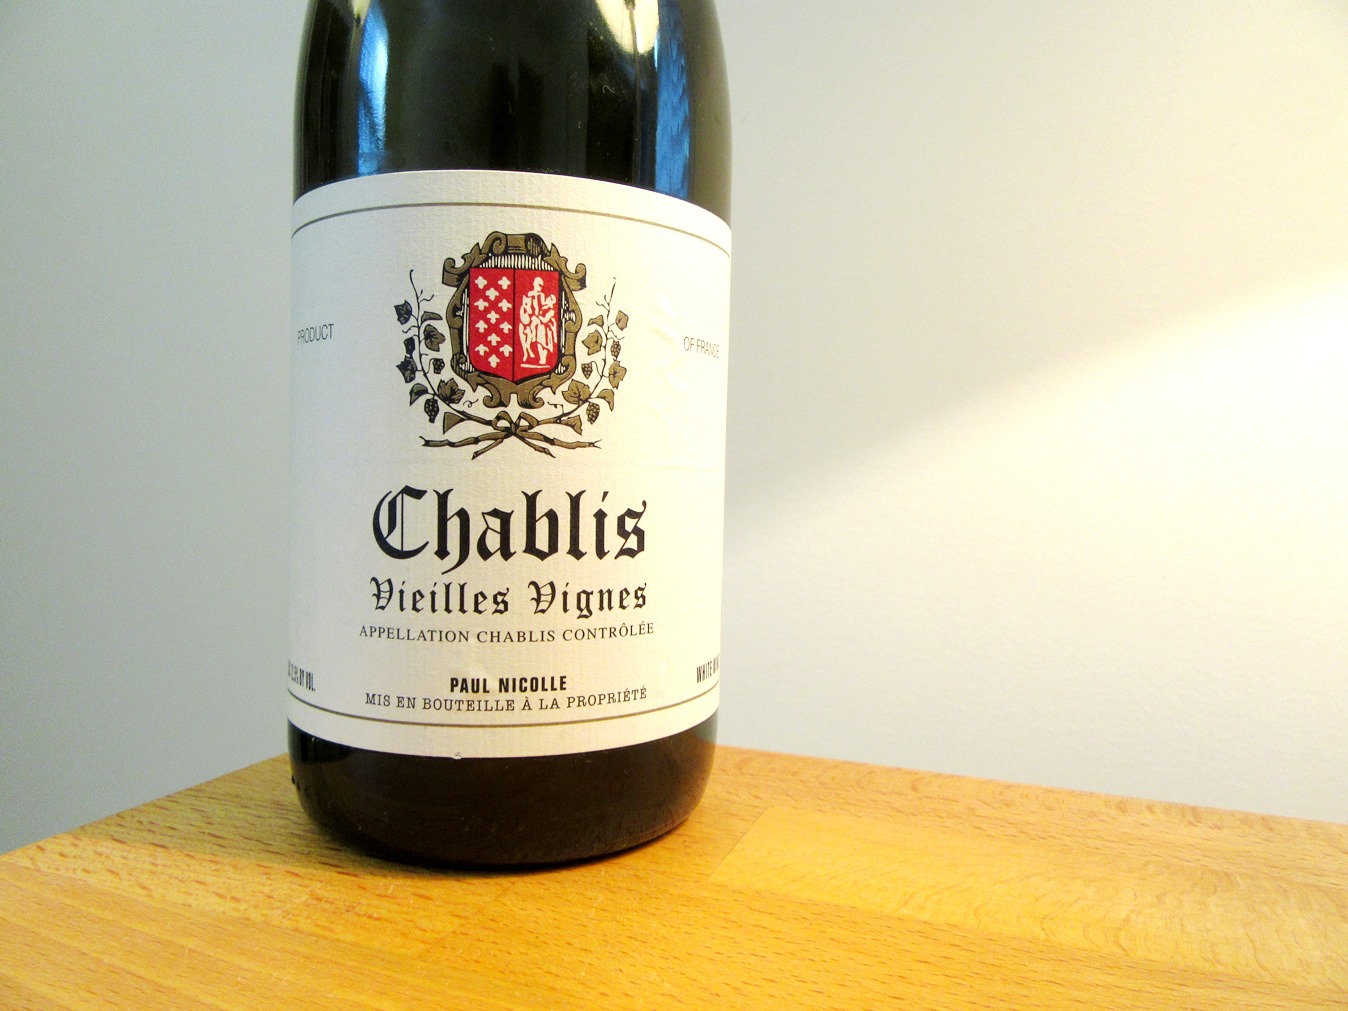 Paul Nicolle, Vieilles Vignes Chablis 2017, Burgundy, France, Wine Casual